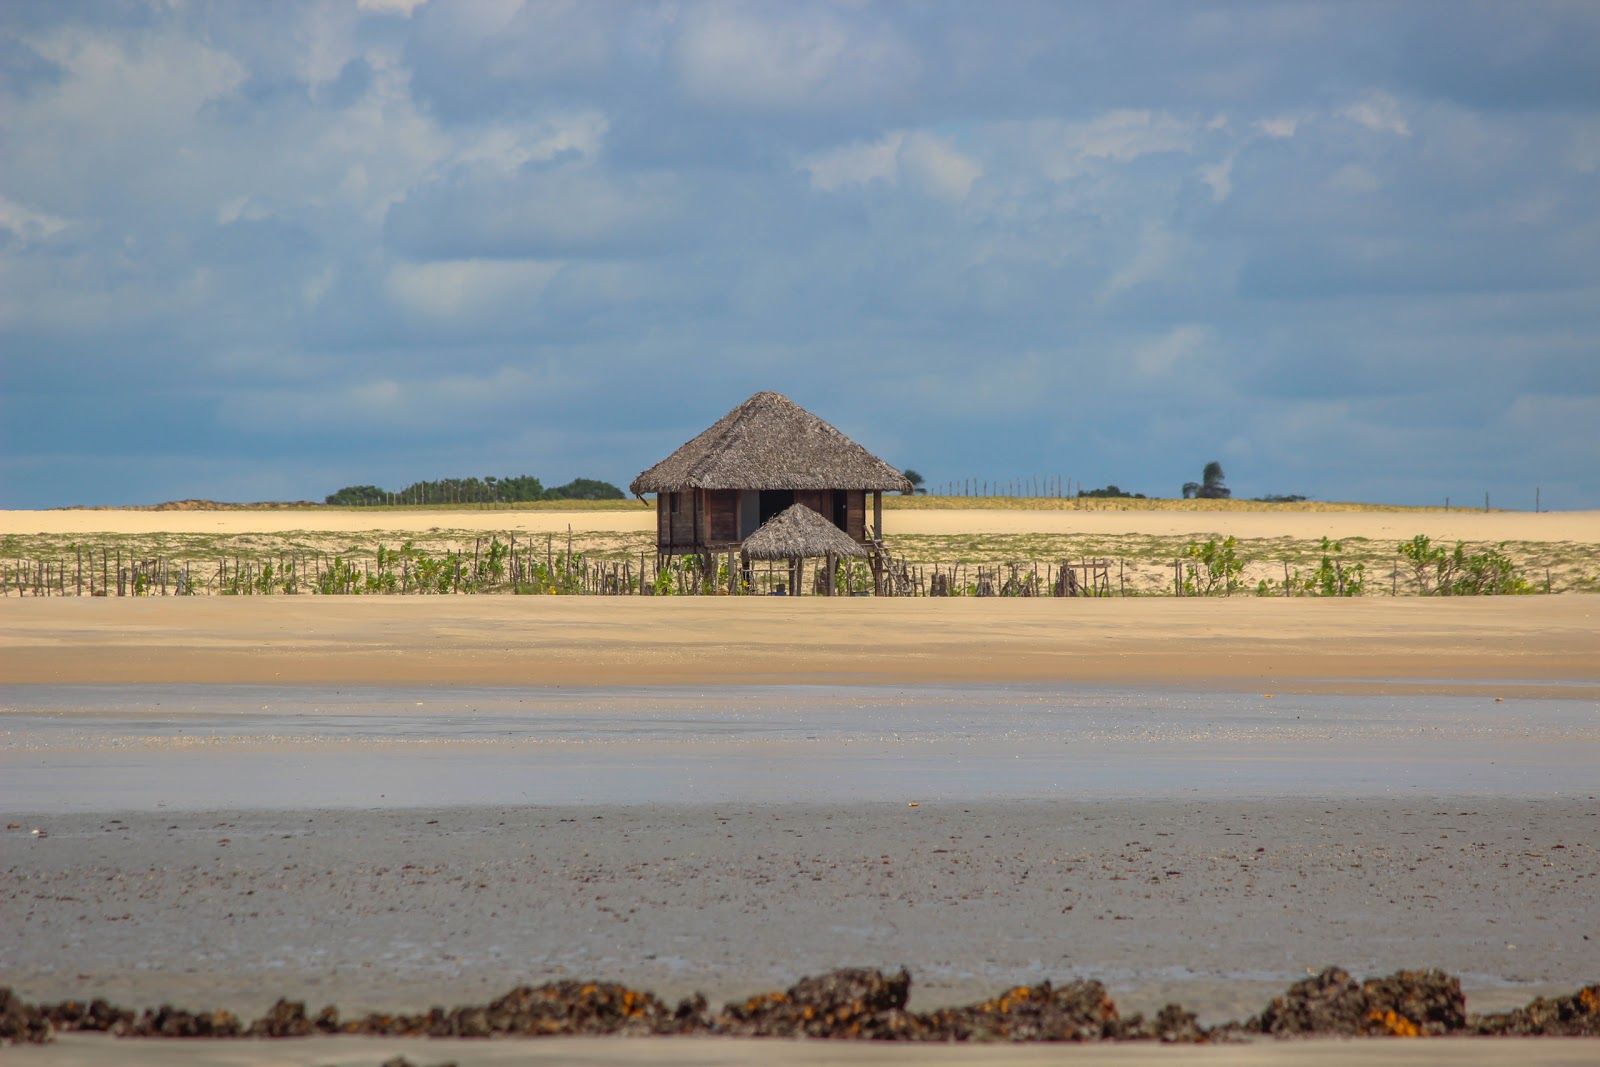 Photo of Caraubas Beach amenities area